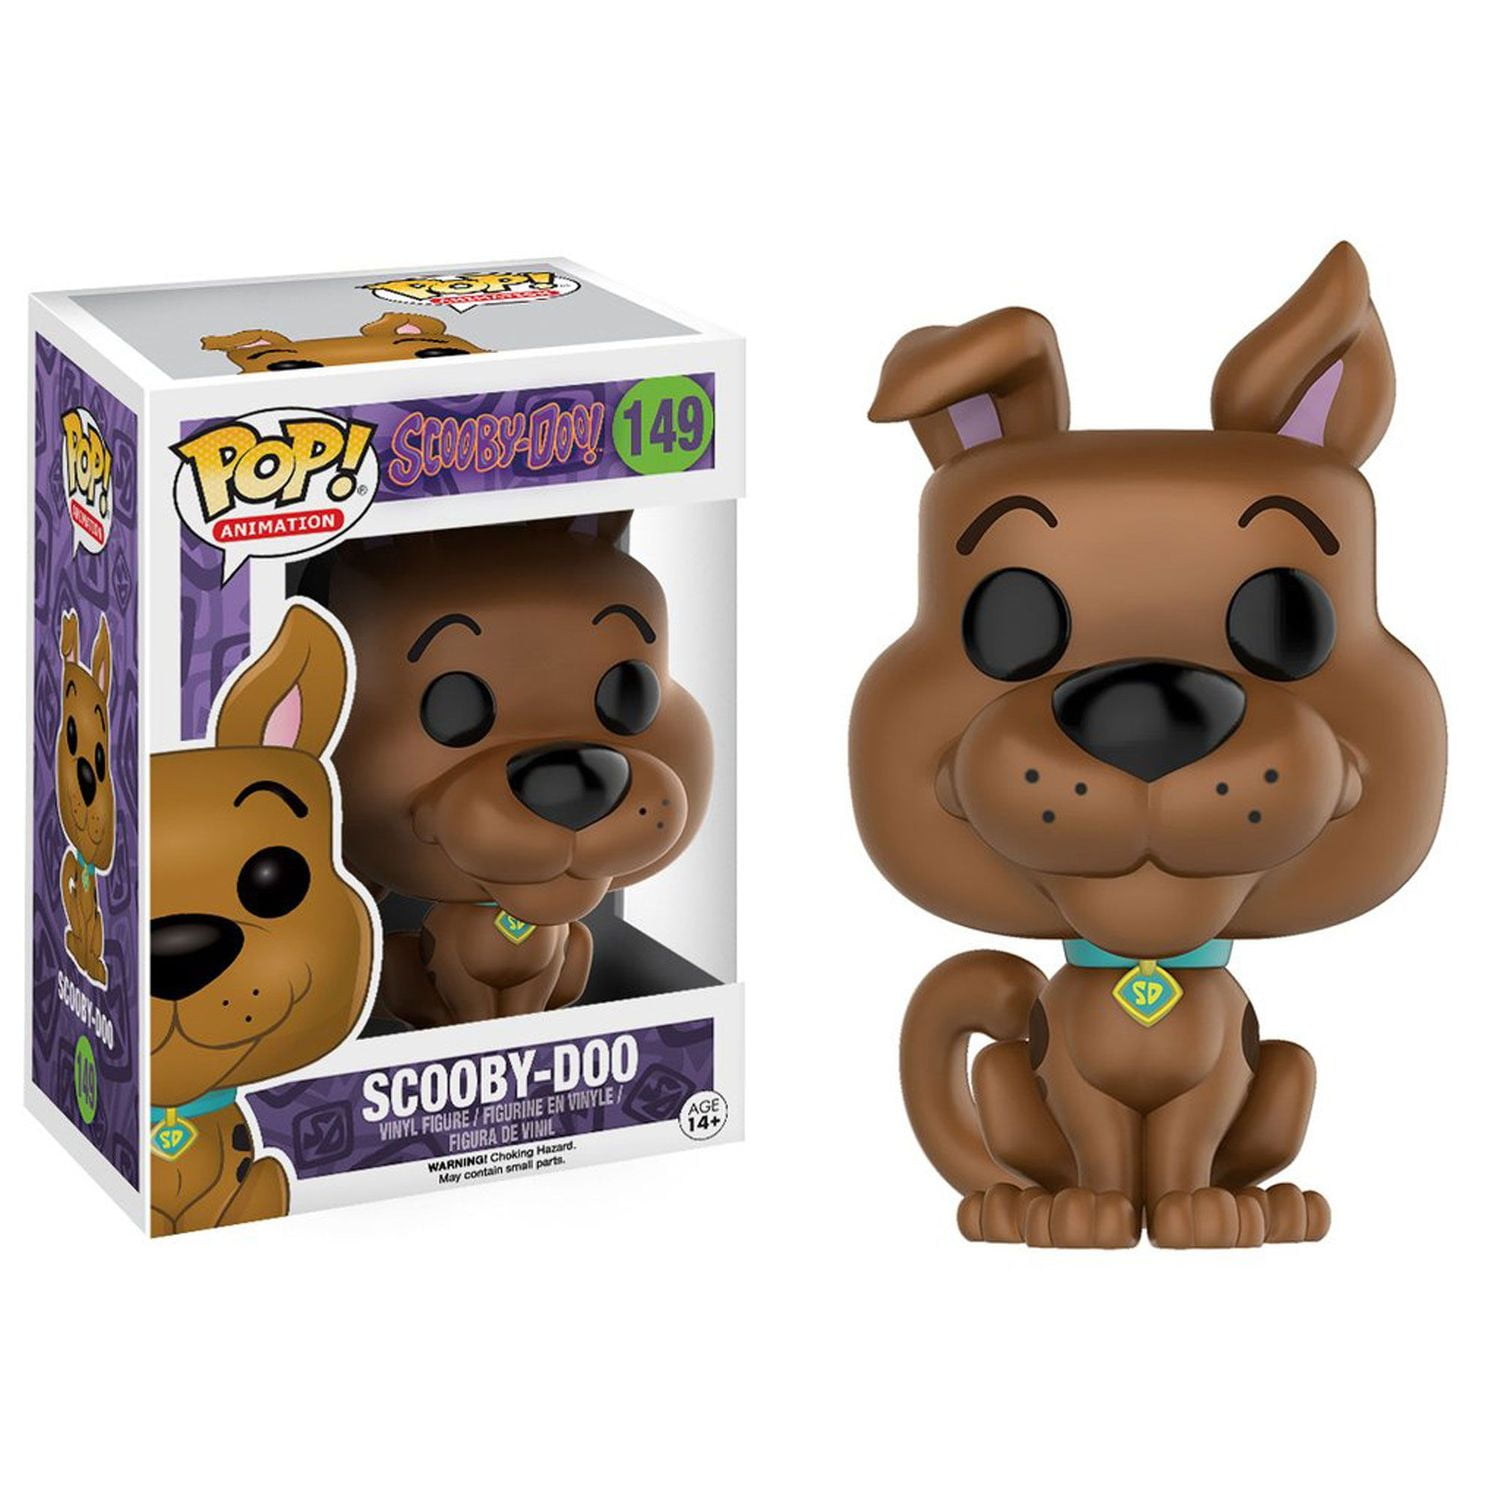 Funko Pop Scooby Doo 910 Special Edicion Scooby 